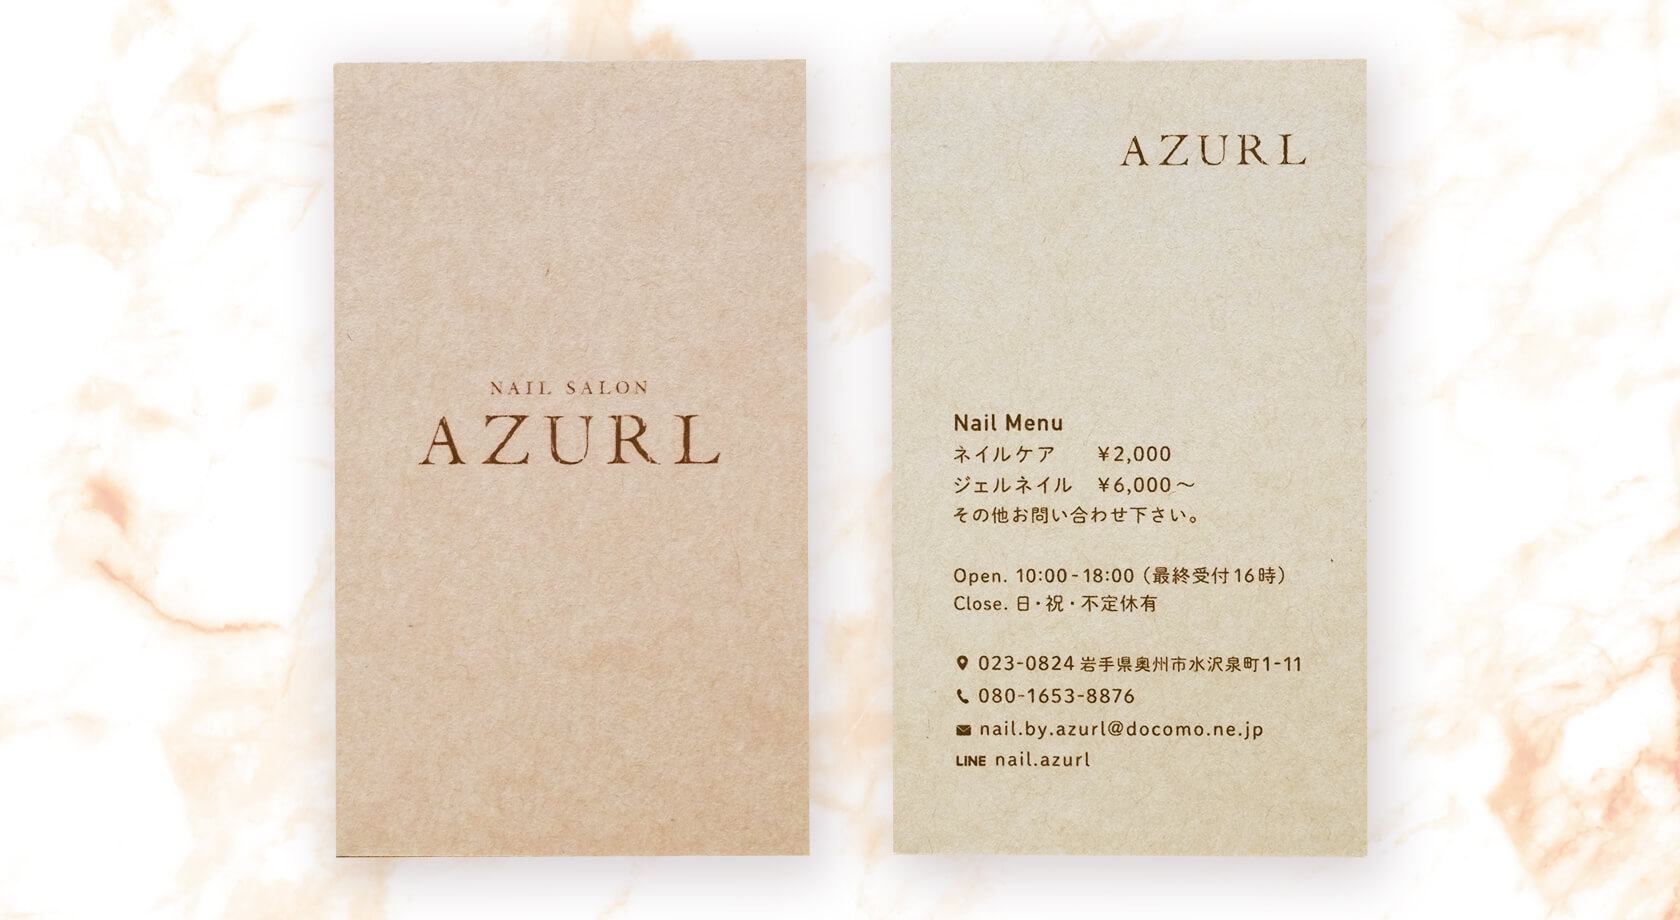 Nail Salon AZURL / ショップカード・名刺制作